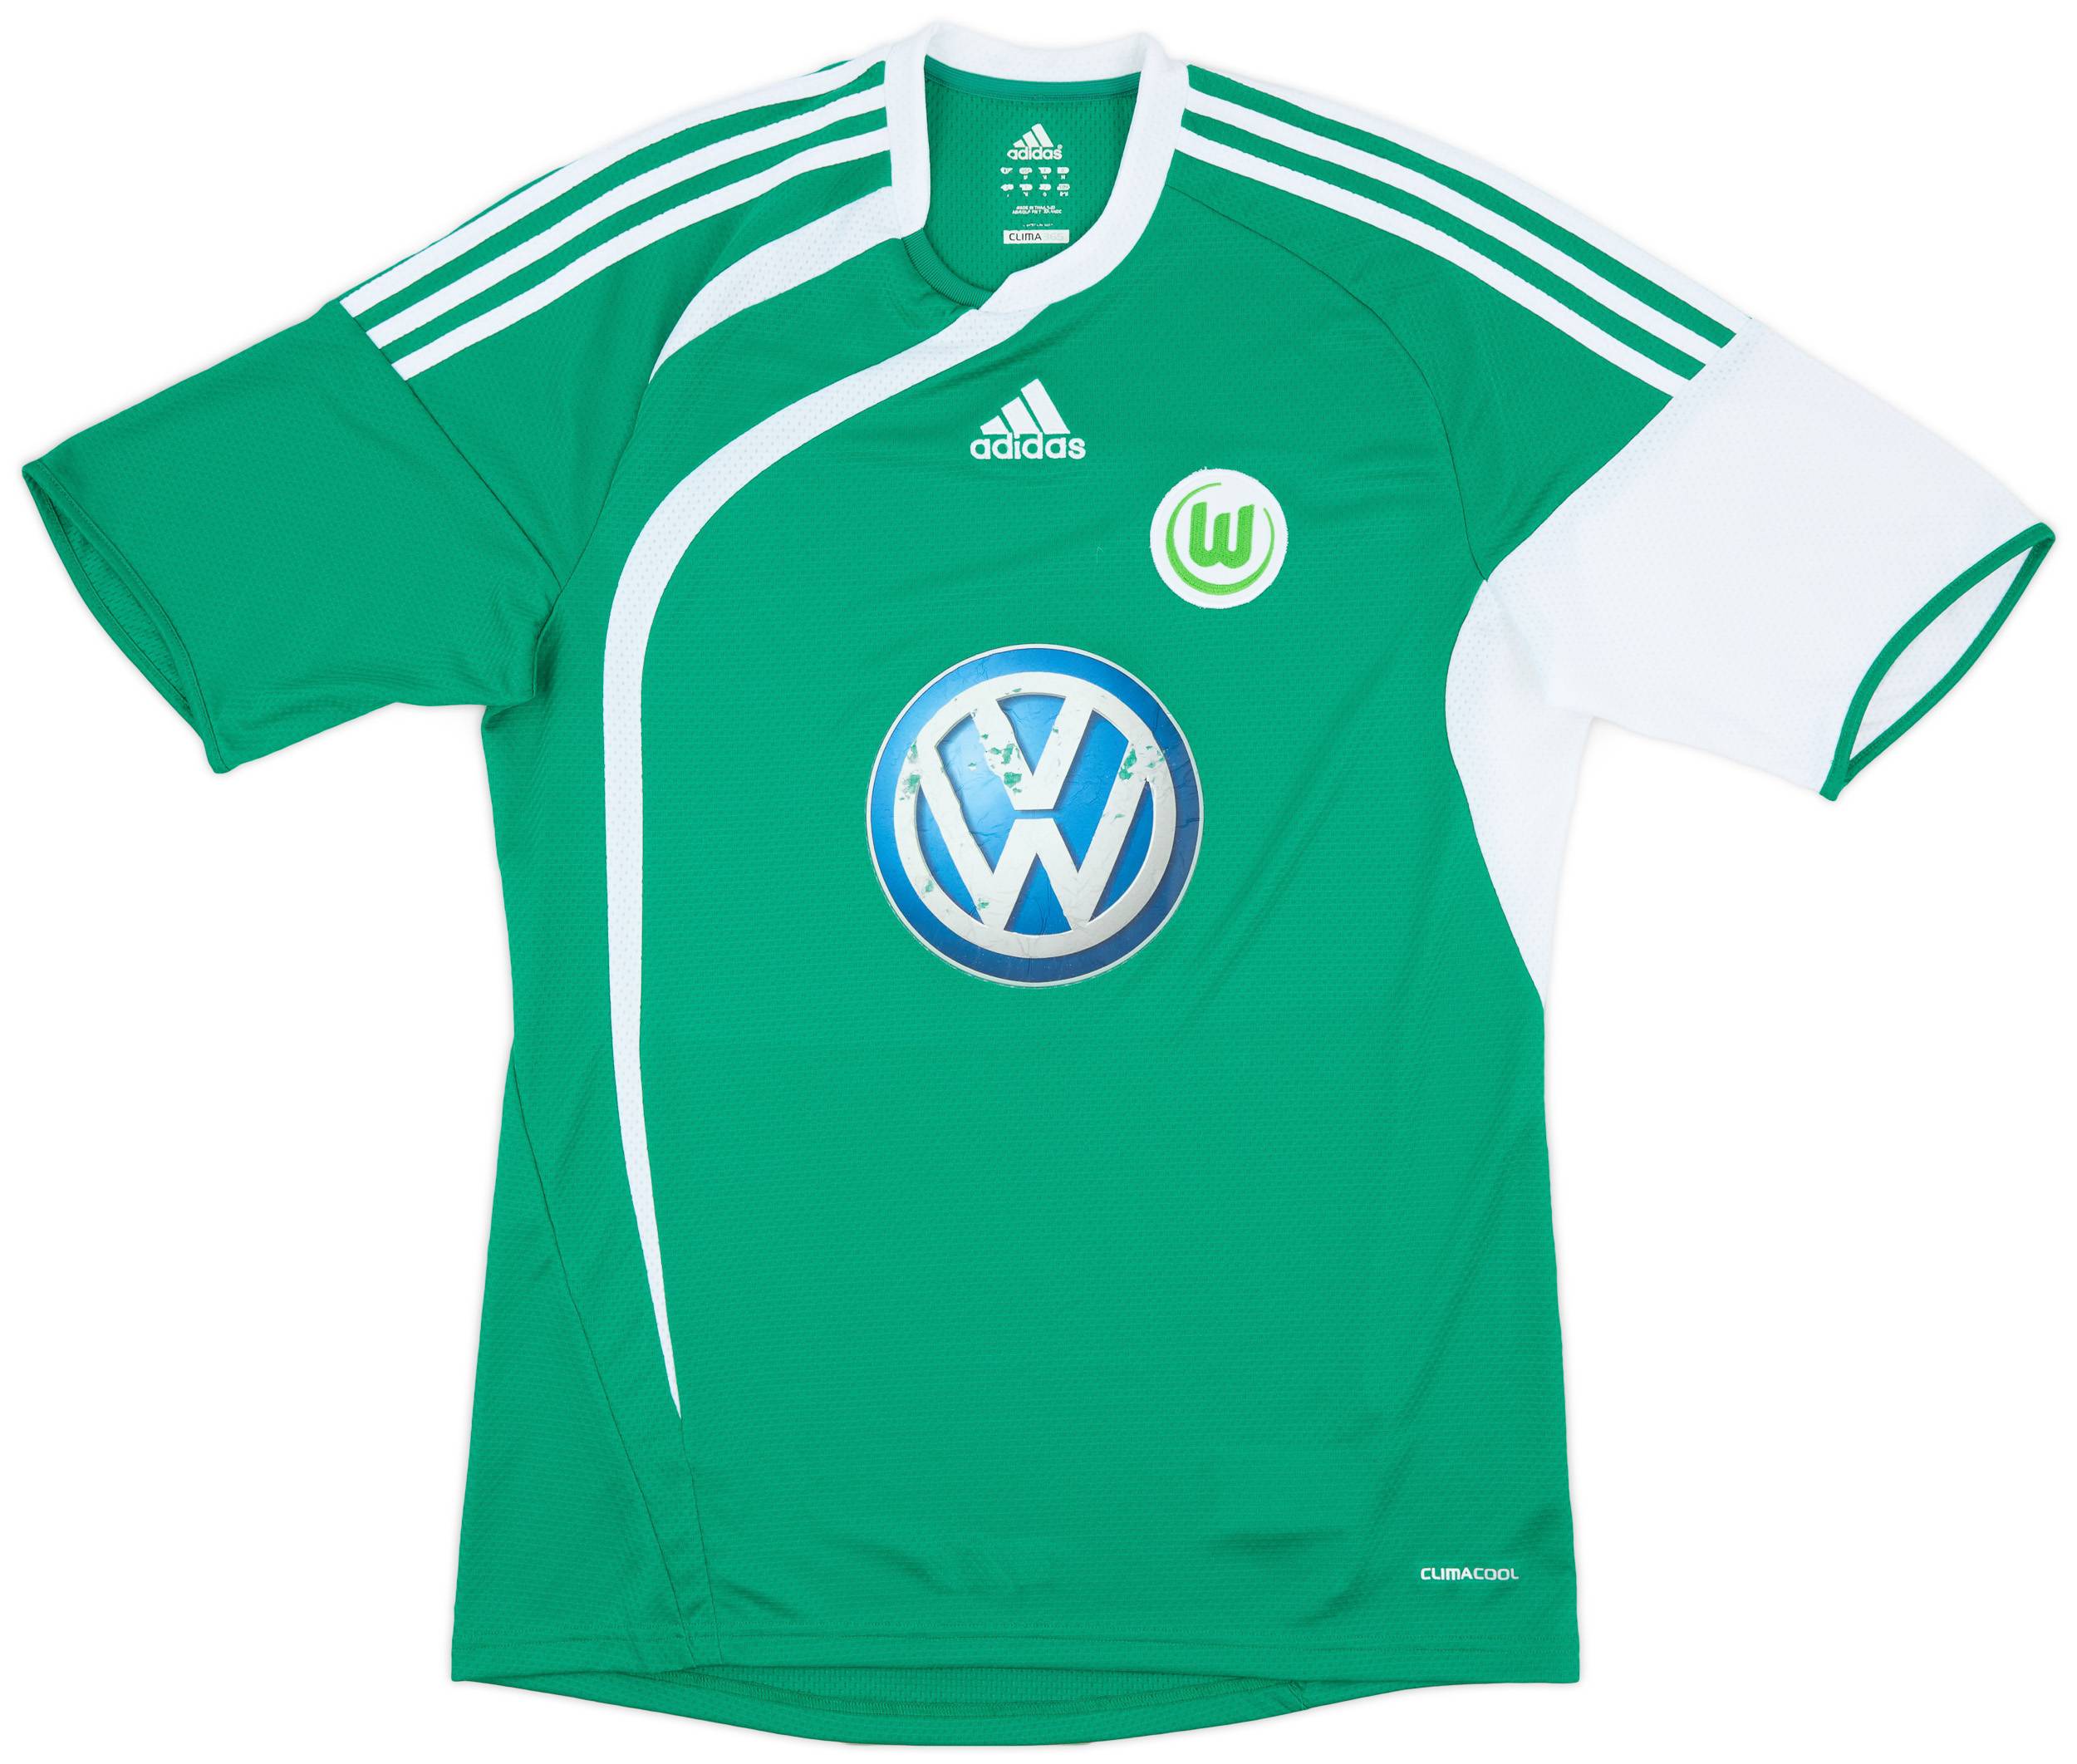 2009-10 Wolfsburg Away Shirt - 6/10 - (M)